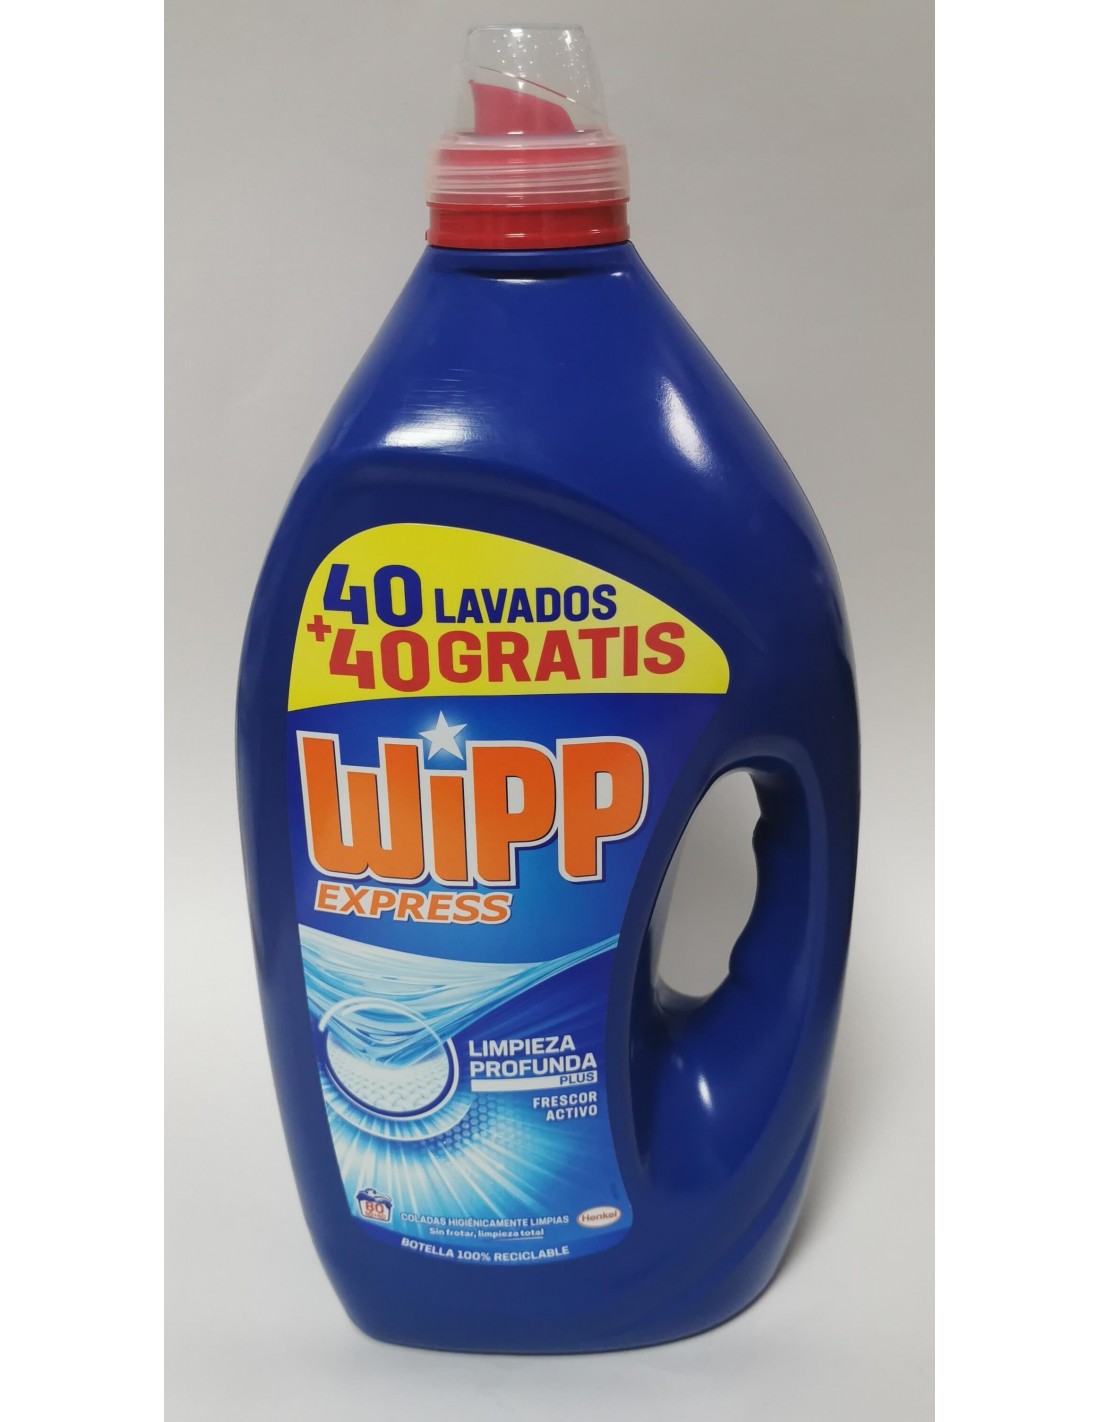 Wipp express limpieza profunda frescor activo 37 lavados + 37 gratis